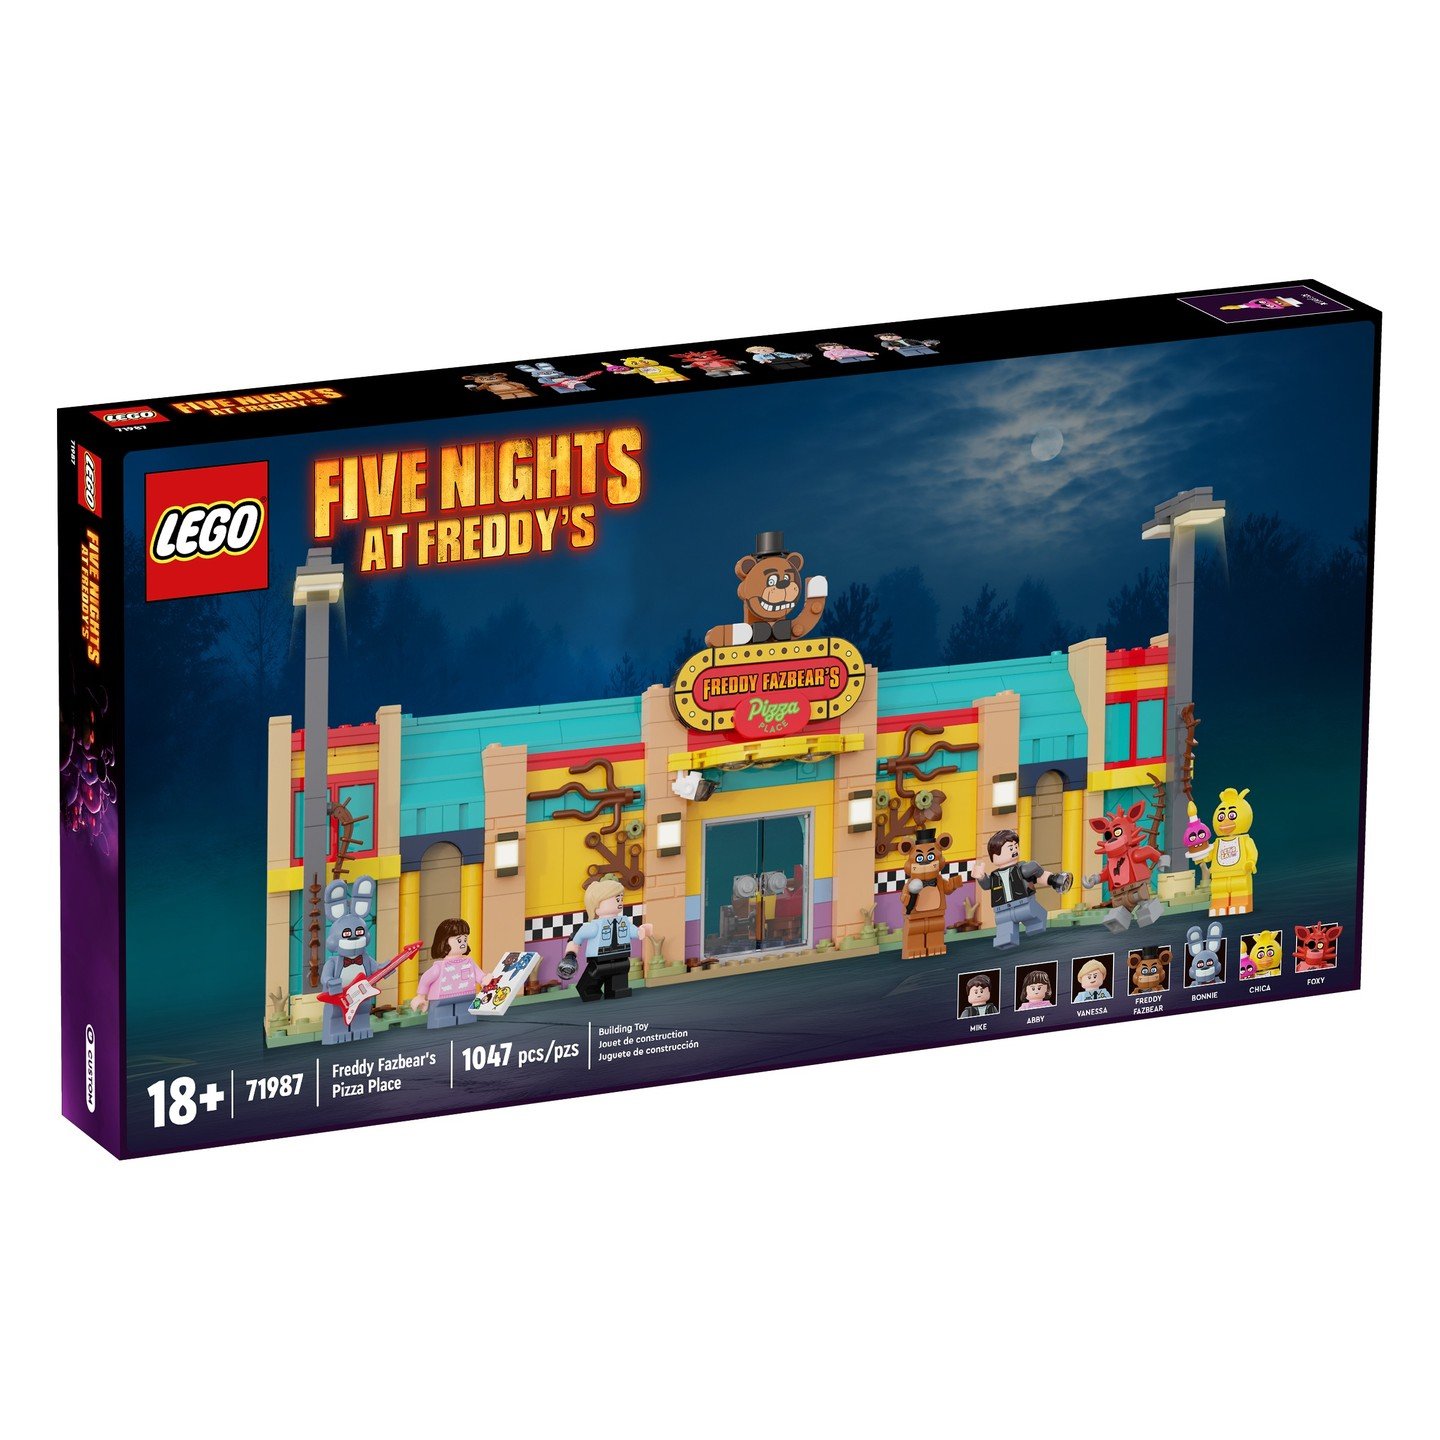 FNAF Five Nights at Freddy's Lego Custom Minifigure Freddy